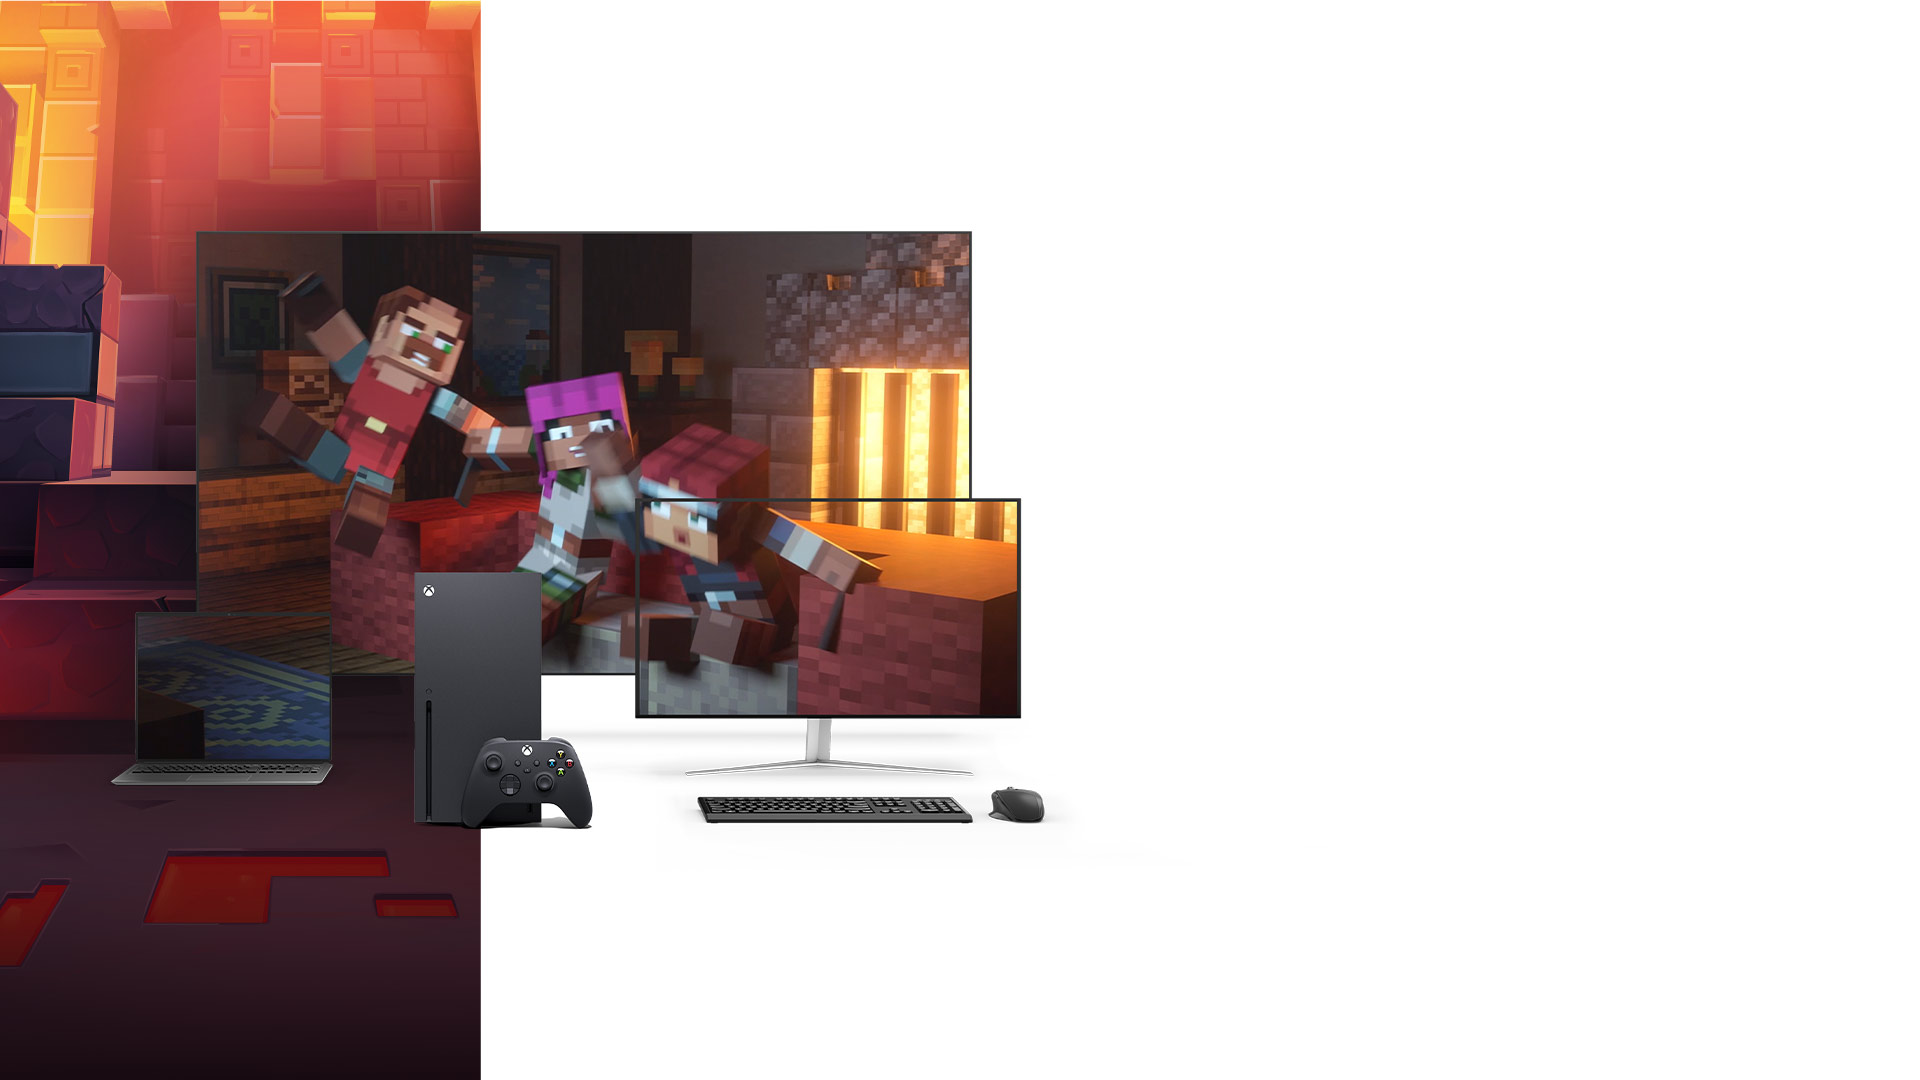 Consola Xbox Series X junto a una computadora portátil, un monitor de PC y un televisor que muestra Minecraft Dungeons